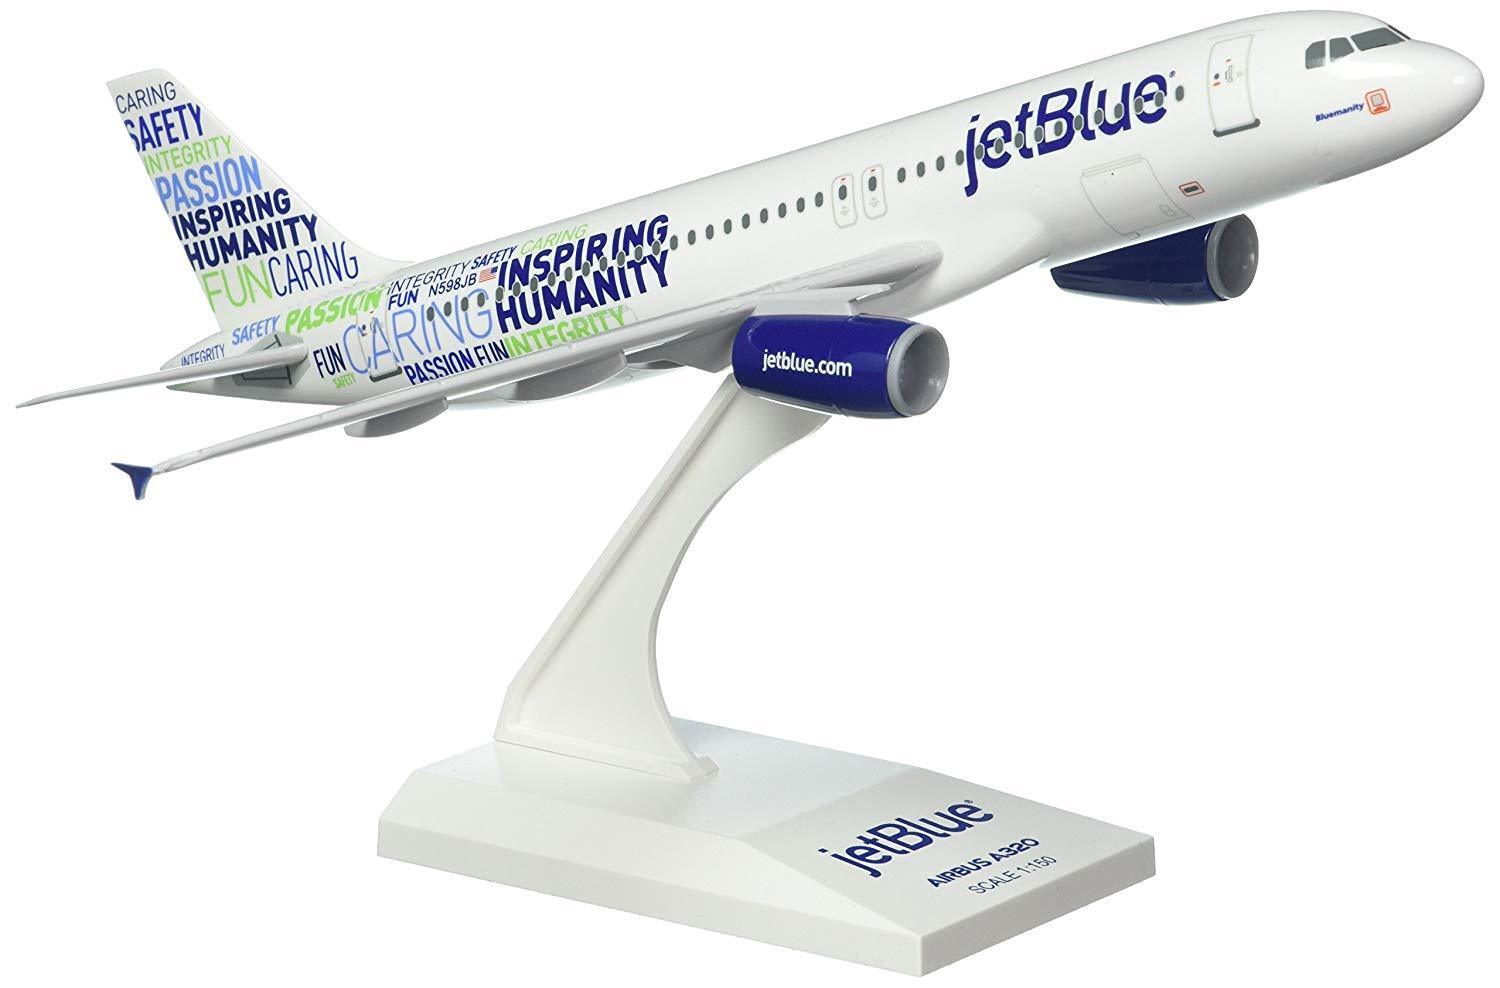 Skymarks SKR974 JetBlue Airways Airbus A320 Bluemanity Desk 1/150 Model Airplane